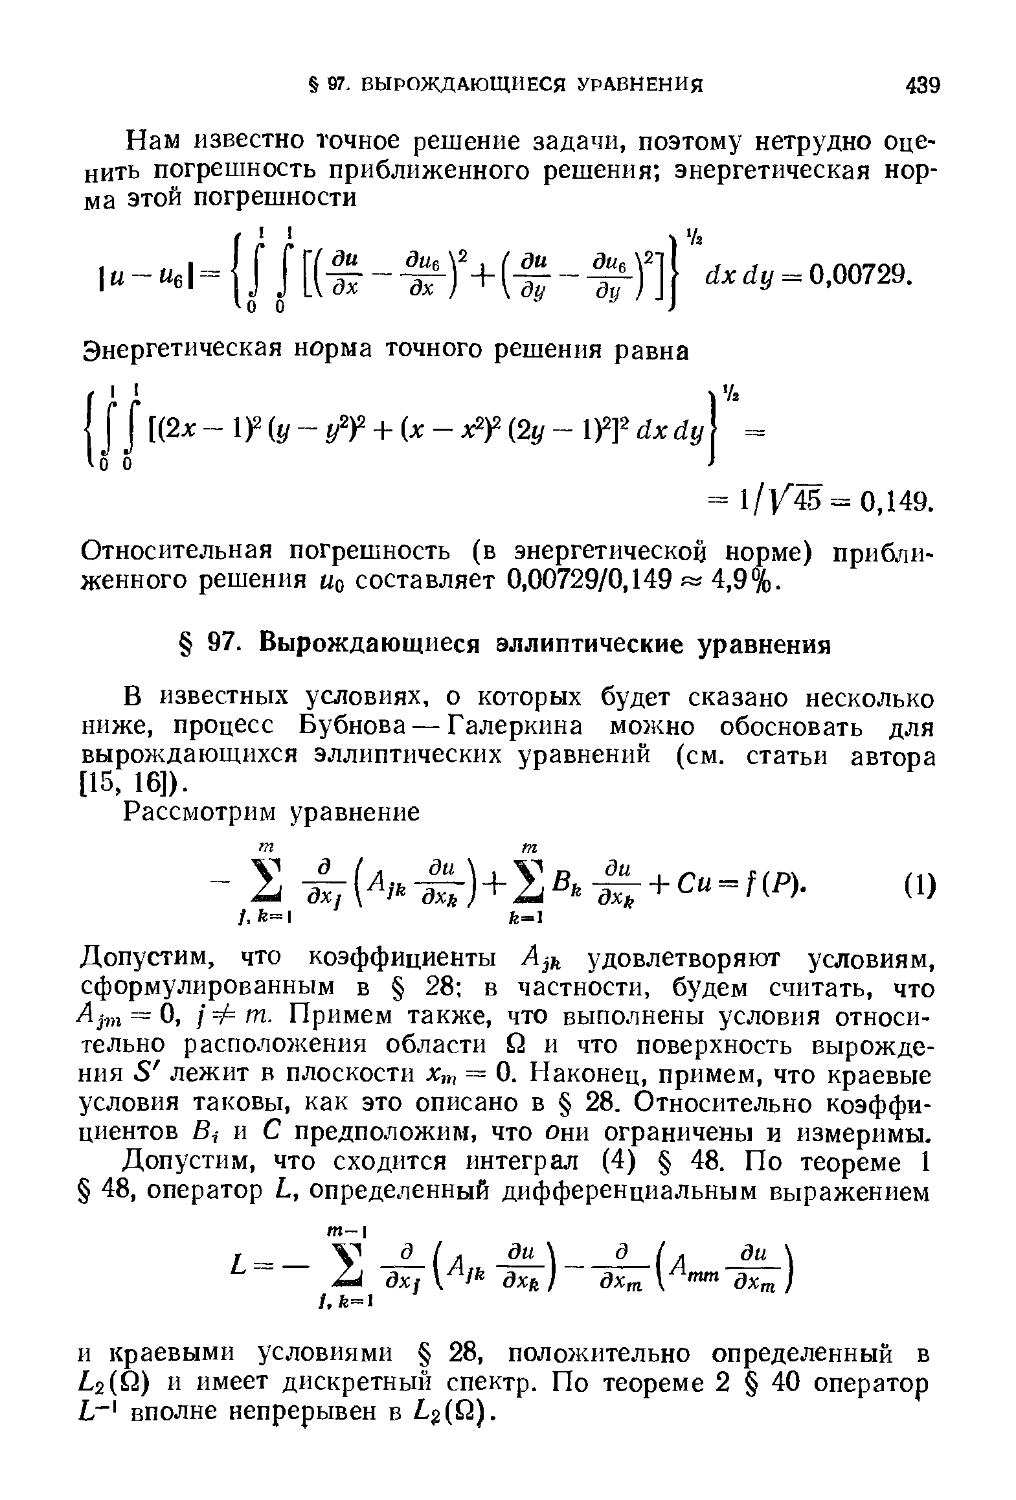 § 97. Вырождающиеся эллиптические уравнения